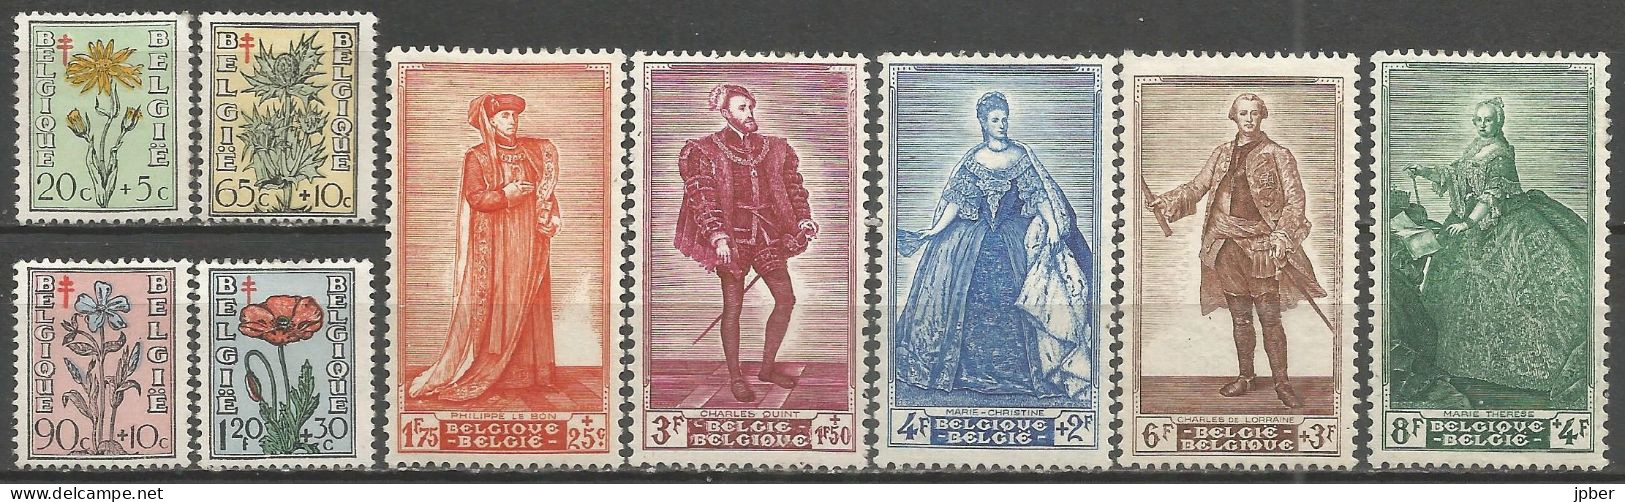 Belgique - Arnica, Panicaut, Pervenche, Coquelicot, Portrait Sénat N°814 à 822 * - Unused Stamps